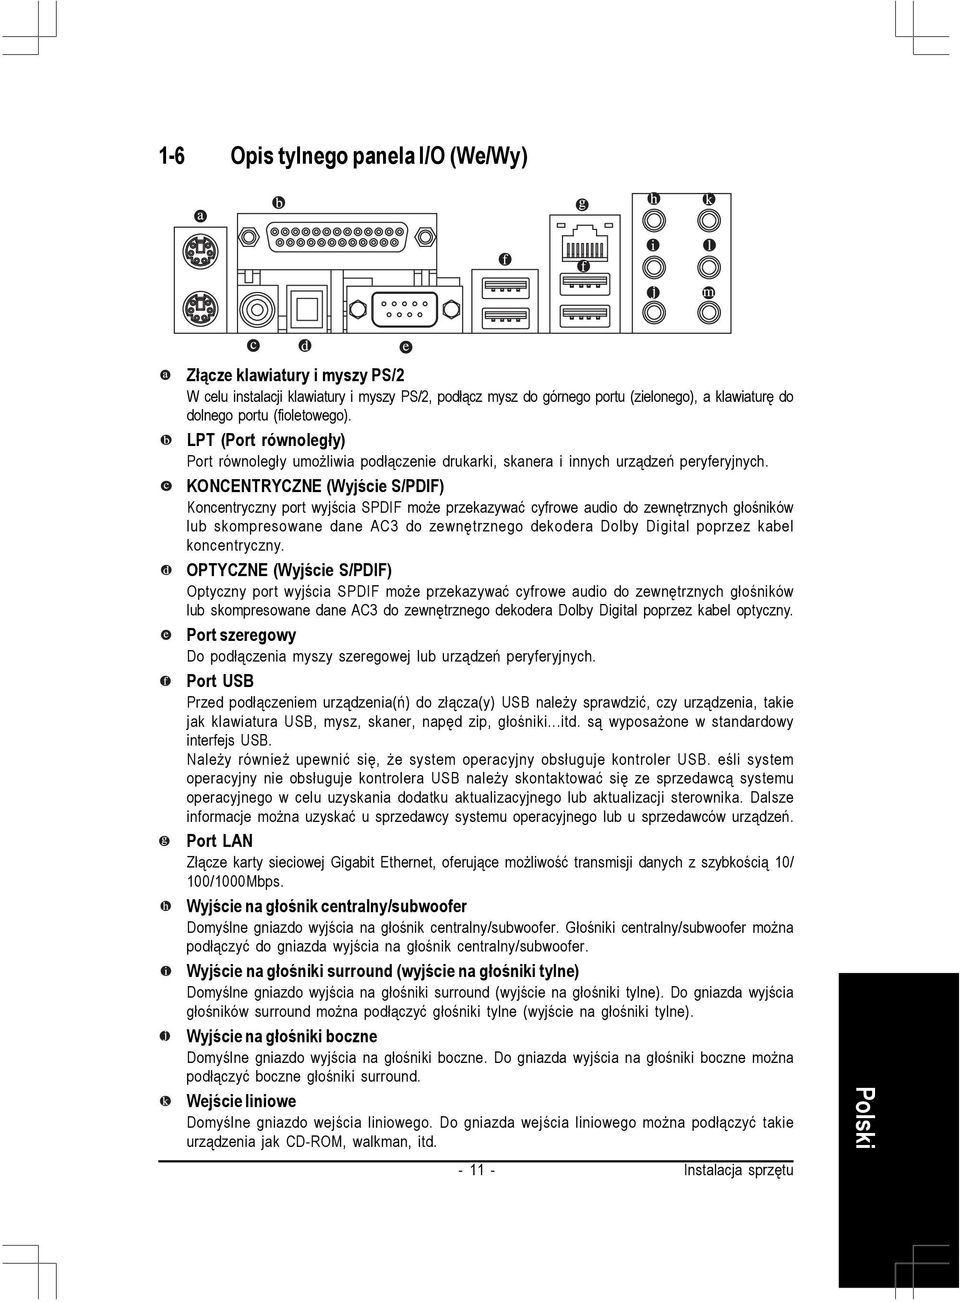 KONCENTRYCZNE (Wyjście S/PDIF) Koncentryczny port wyjścia SPDIF może przekazywać cyfrowe audio do zewnętrznych głośników lub skompresowane dane AC3 do zewnętrznego dekodera Dolby Digital poprzez